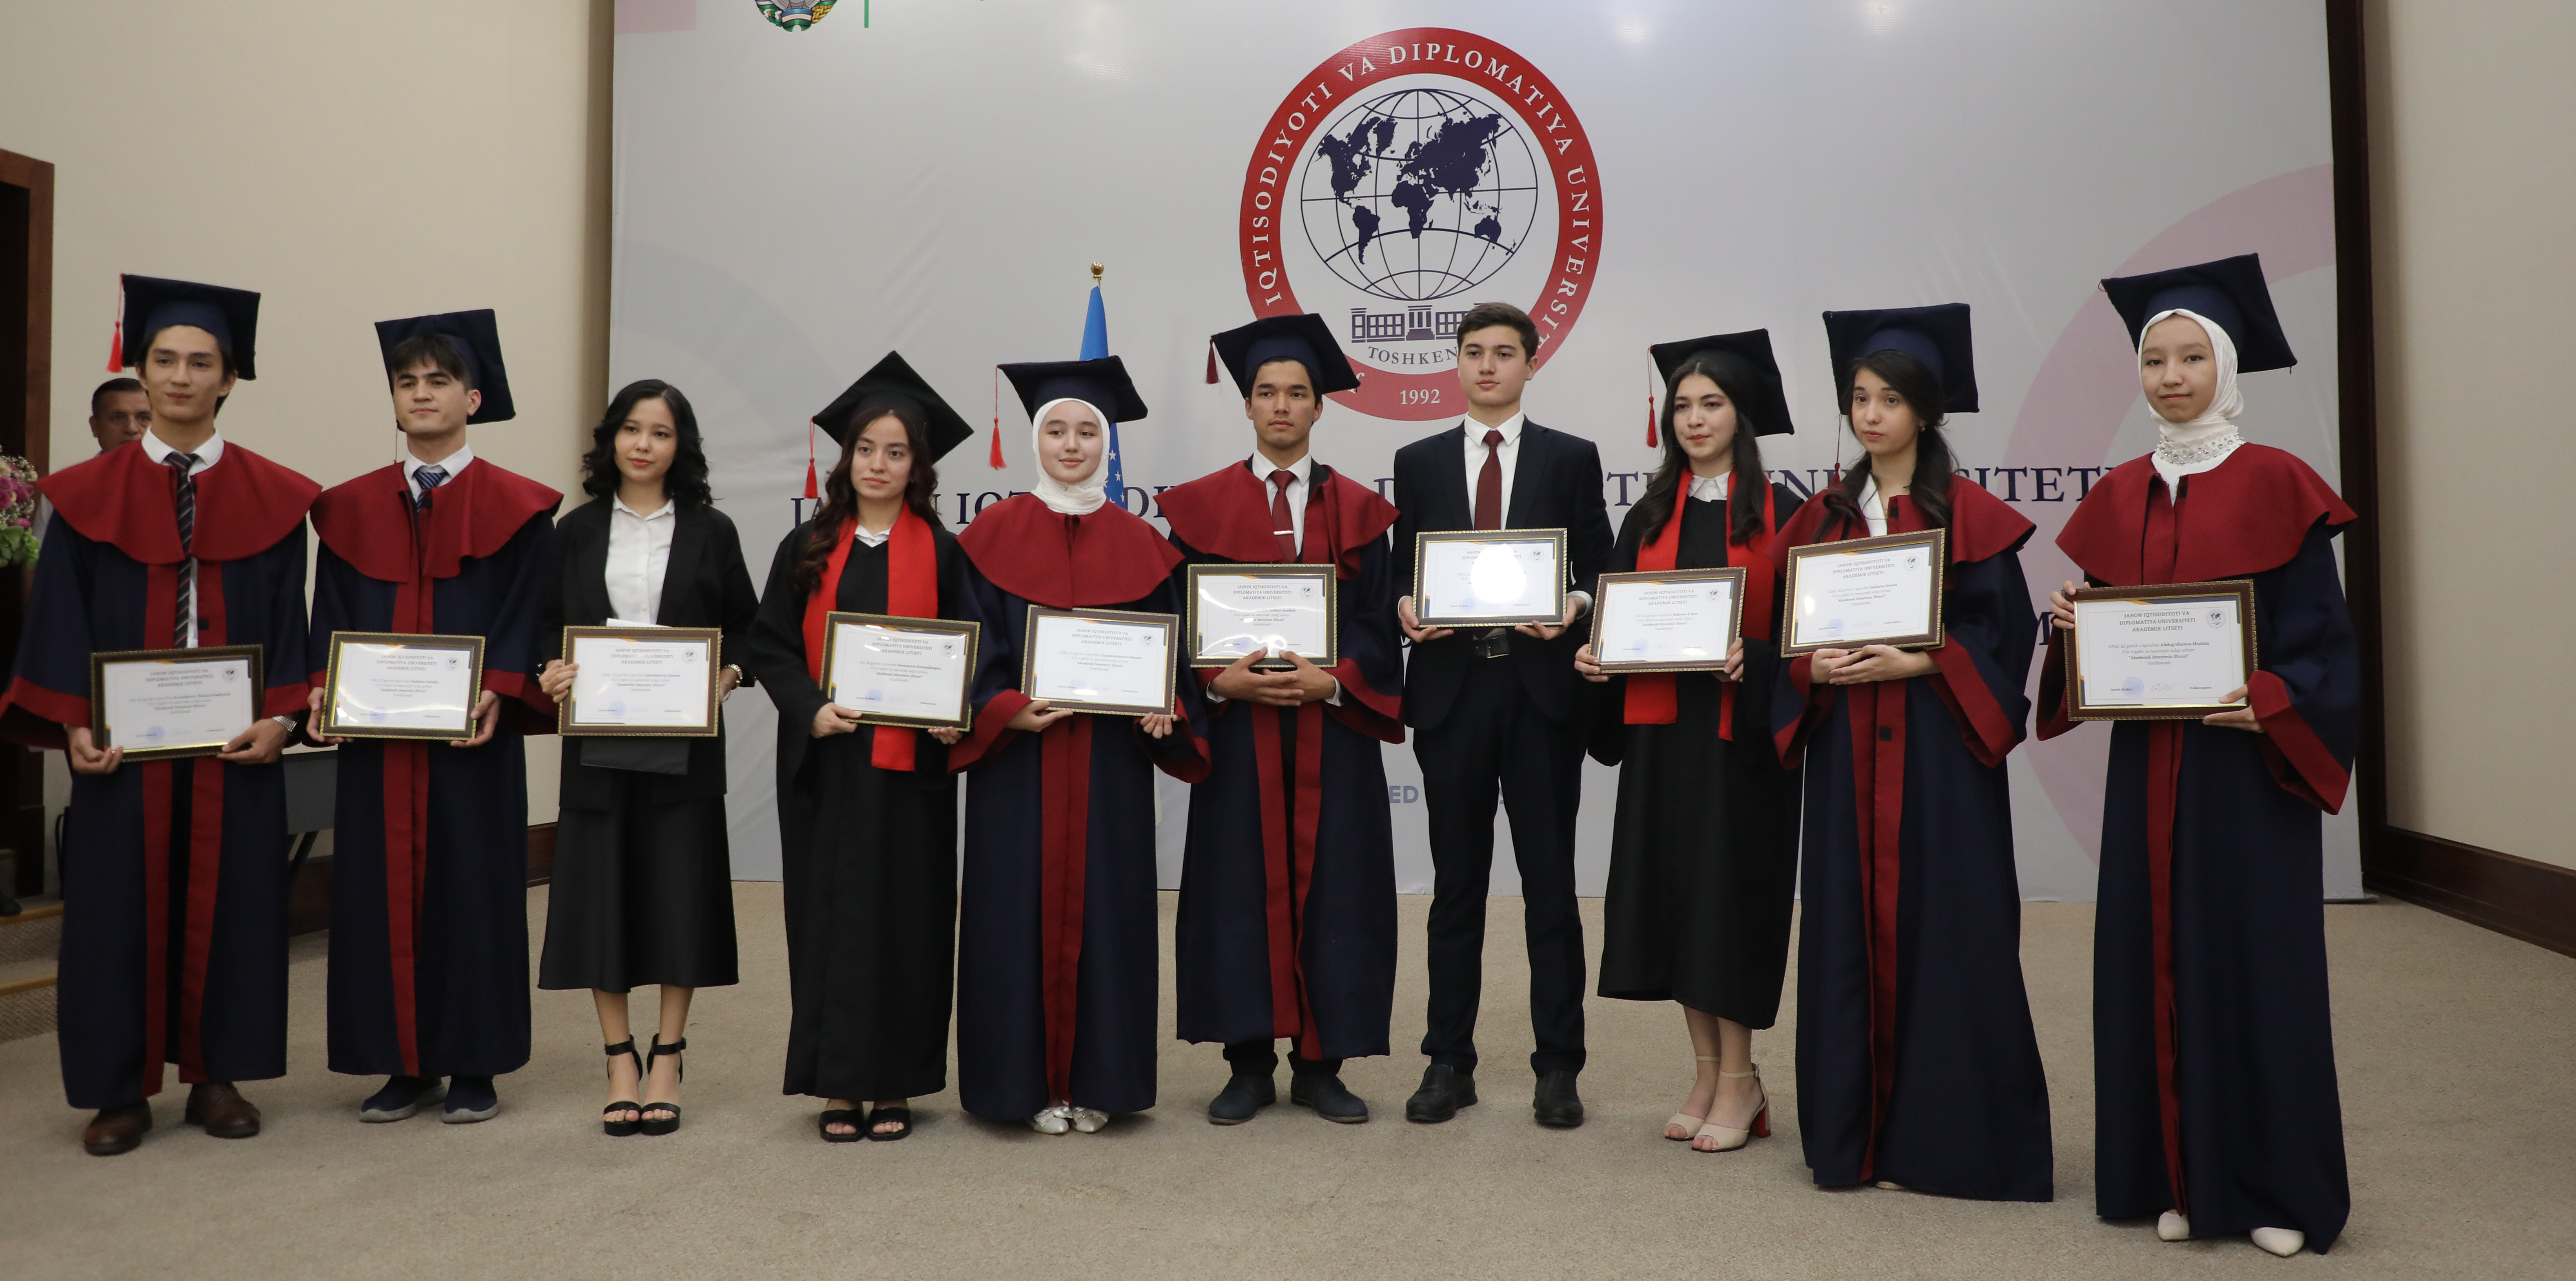 В Университете мировой экономики и дипломатии состоялась церемония вручения медалей выпускникам академического лицея при УМЭД